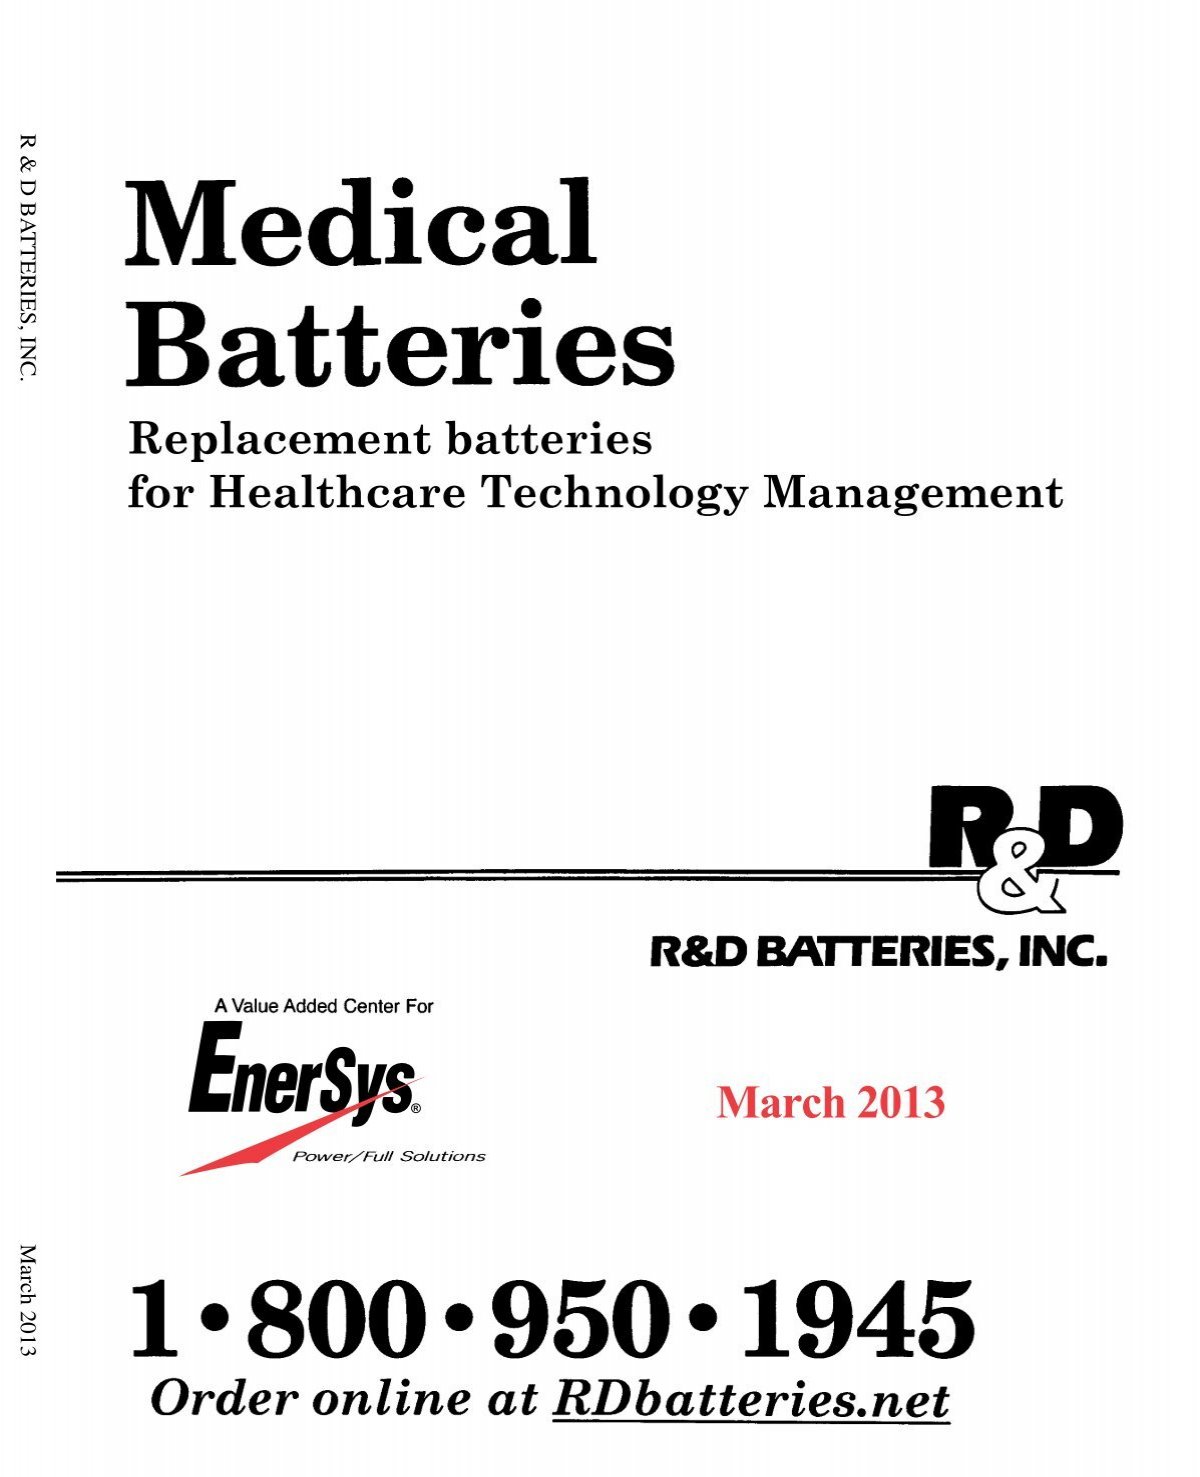 Download our 2013 Catalog! - R&D Batteries, Inc.